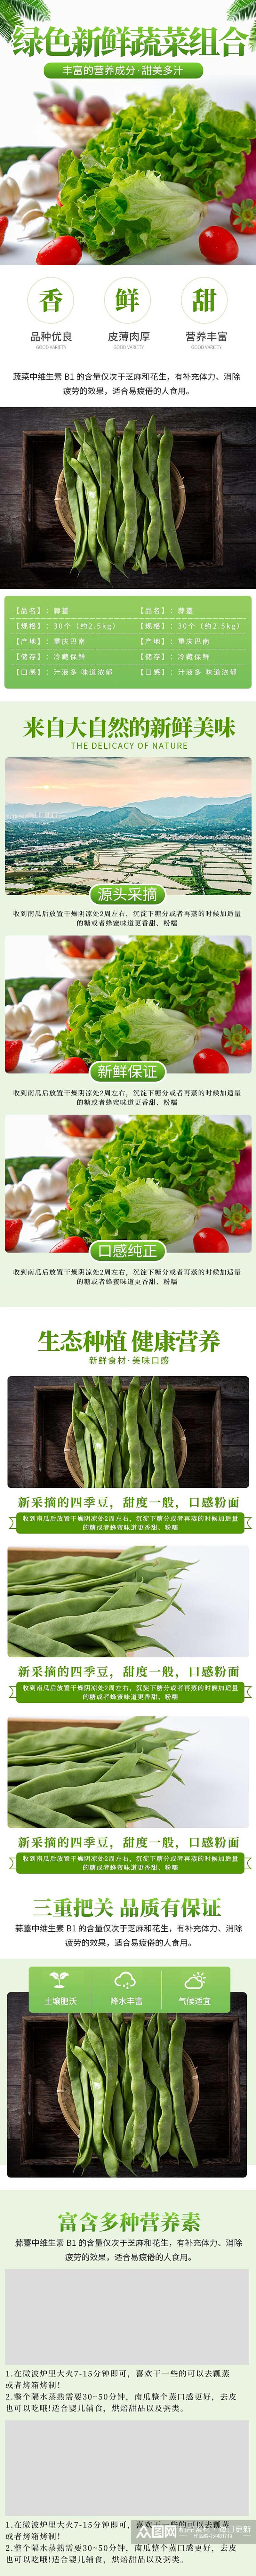 绿色鲜香组合蔬菜电商详情页素材